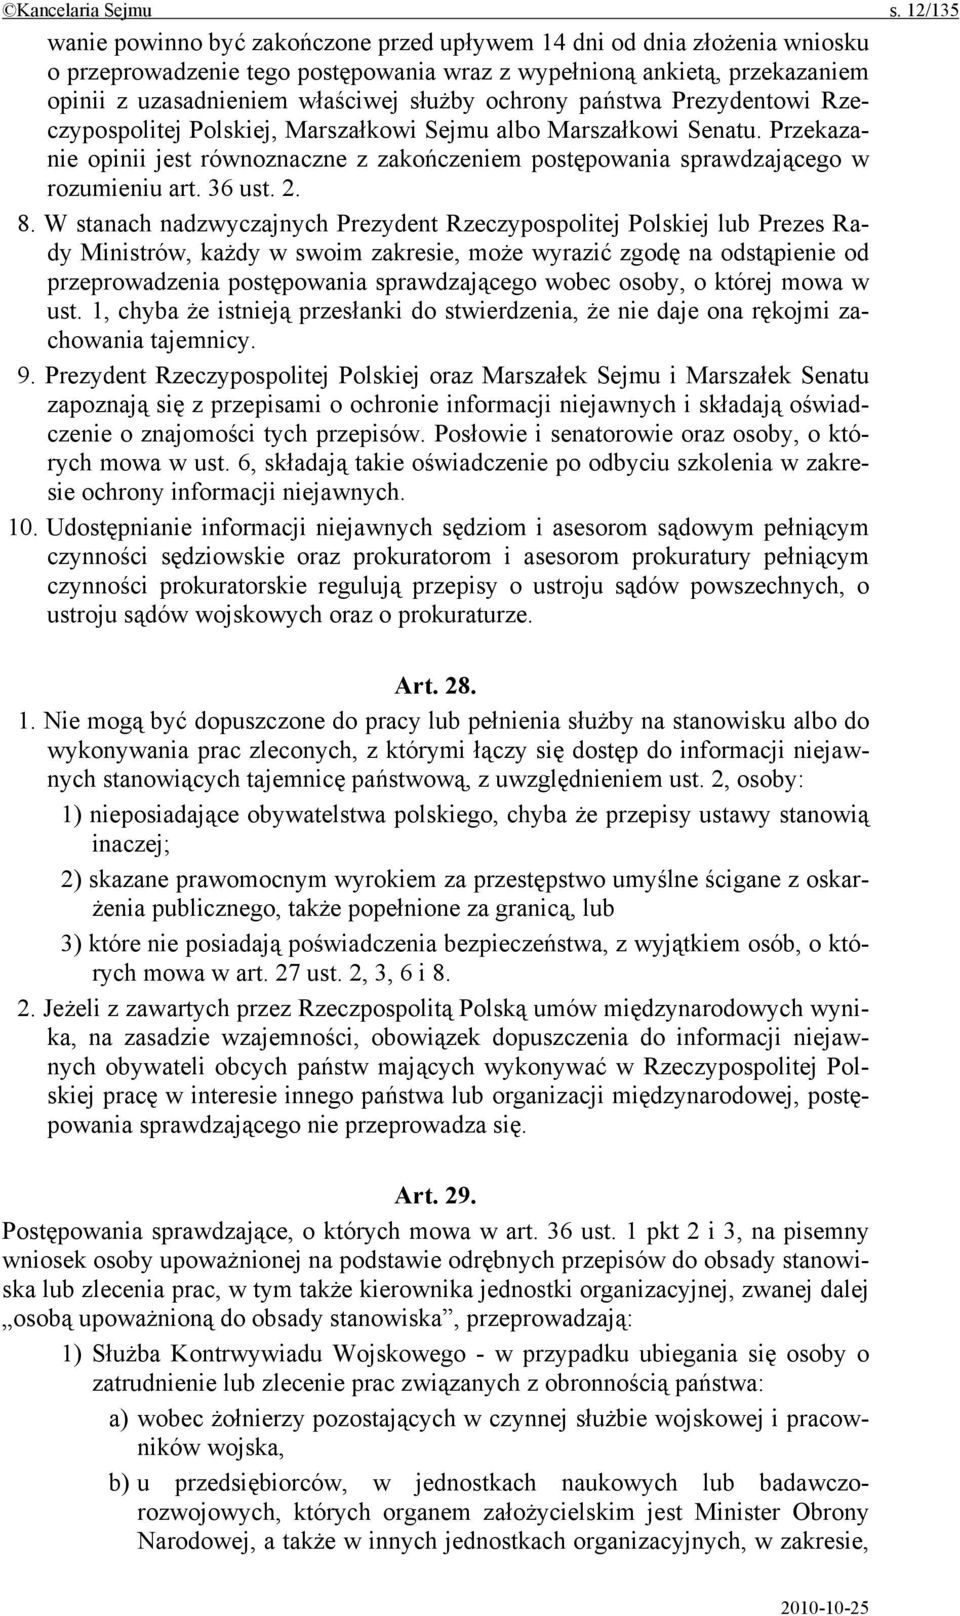 ochrony państwa Prezydentowi Rzeczypospolitej Polskiej, Marszałkowi Sejmu albo Marszałkowi Senatu. Przekazanie opinii jest równoznaczne z zakończeniem postępowania sprawdzającego w rozumieniu art.